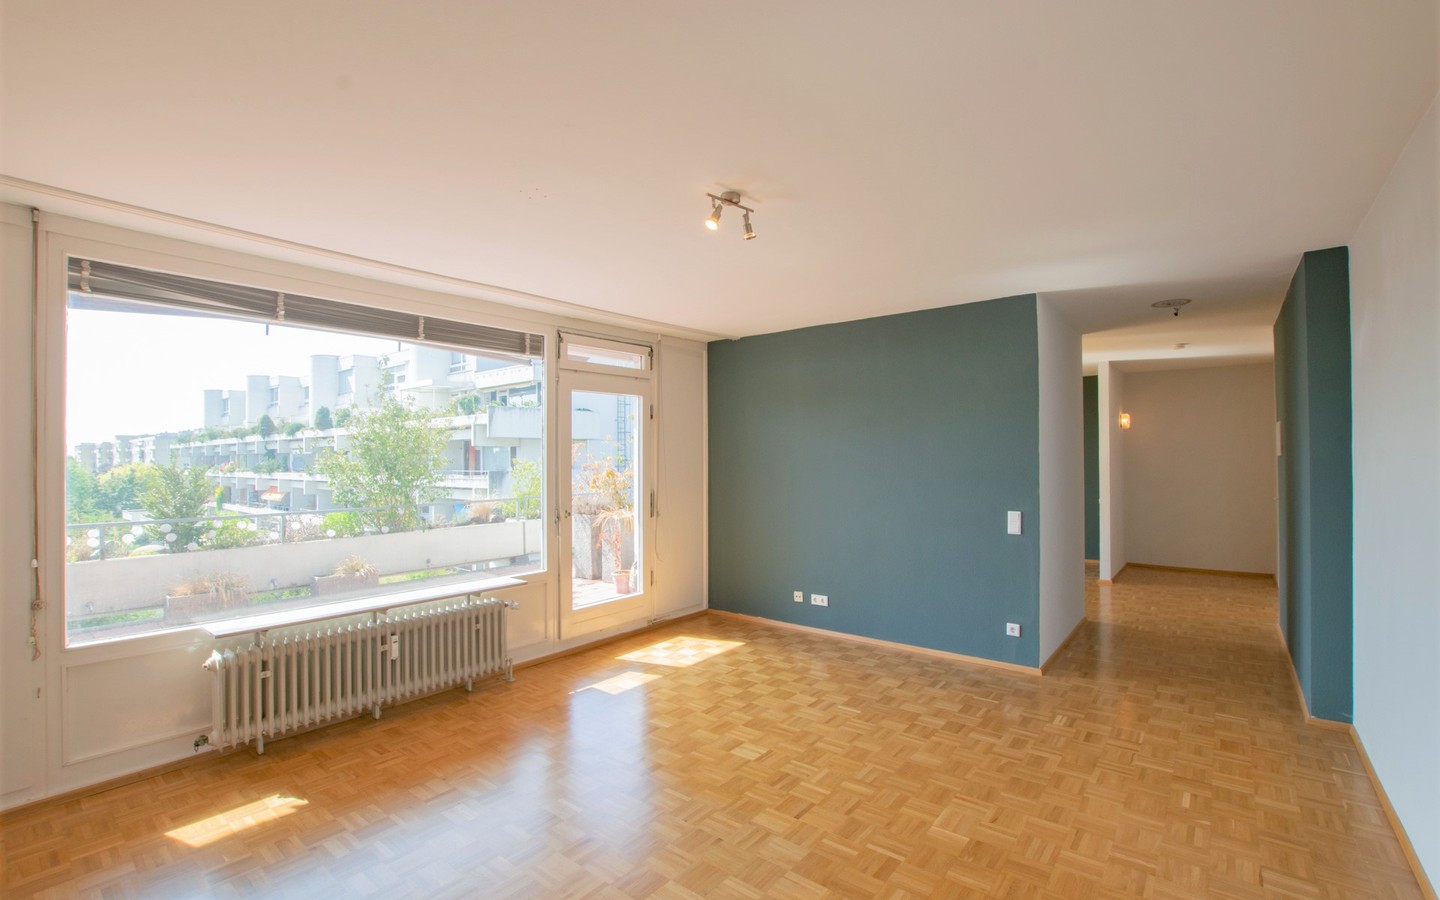 Wohnzimmer - Schöne Aussichten: Renovierte Maisonettewohnung mit Terrasse und tollem Ausblick!